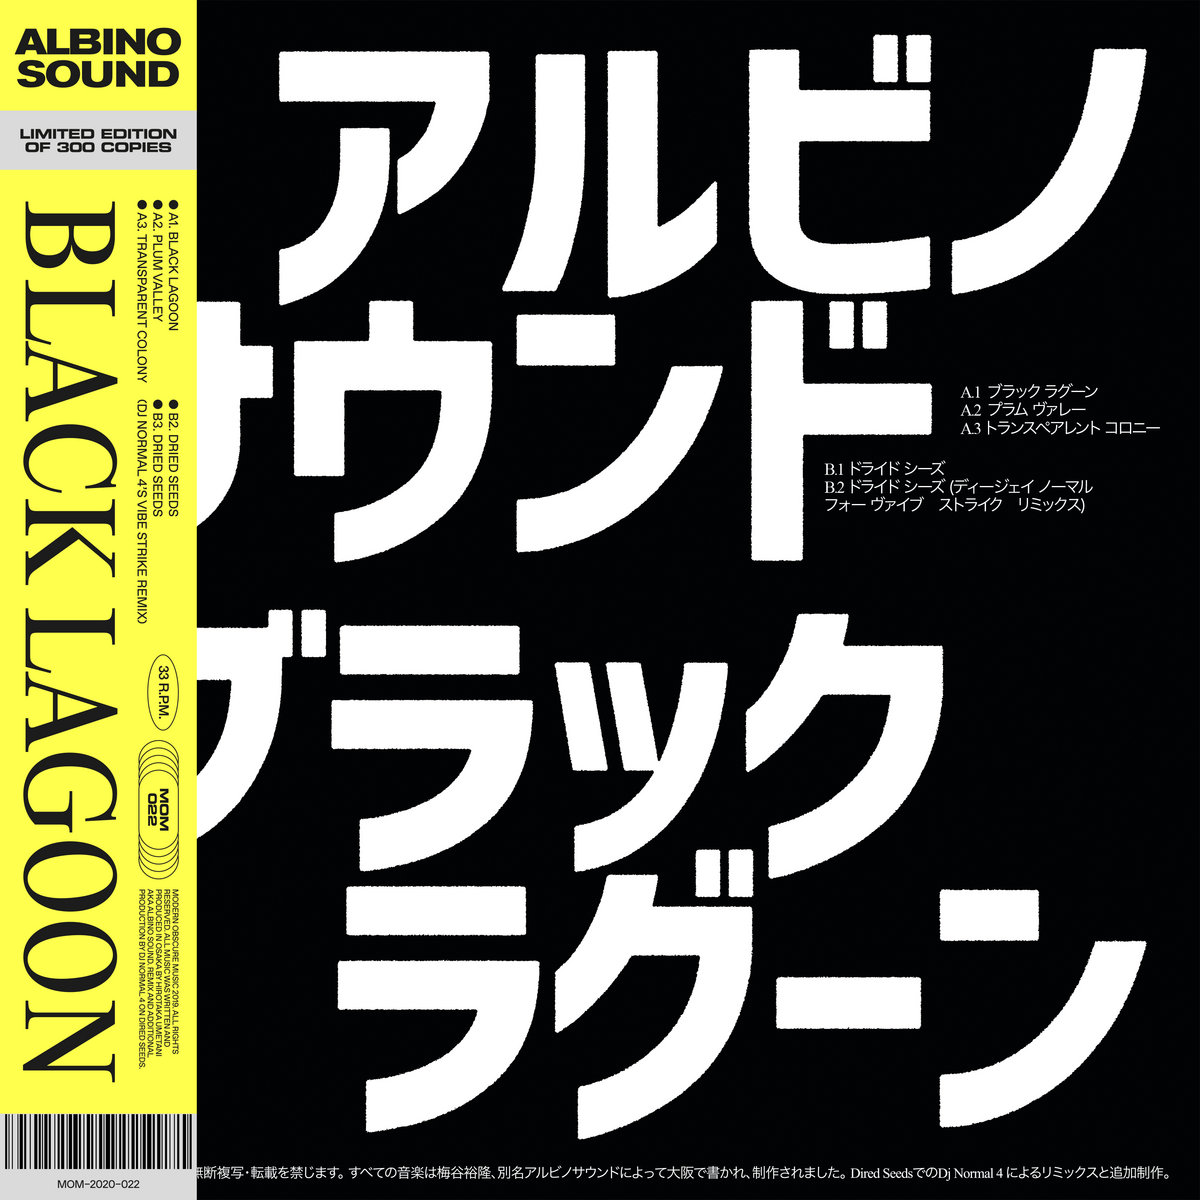 Albino Sound - Black Lagoon